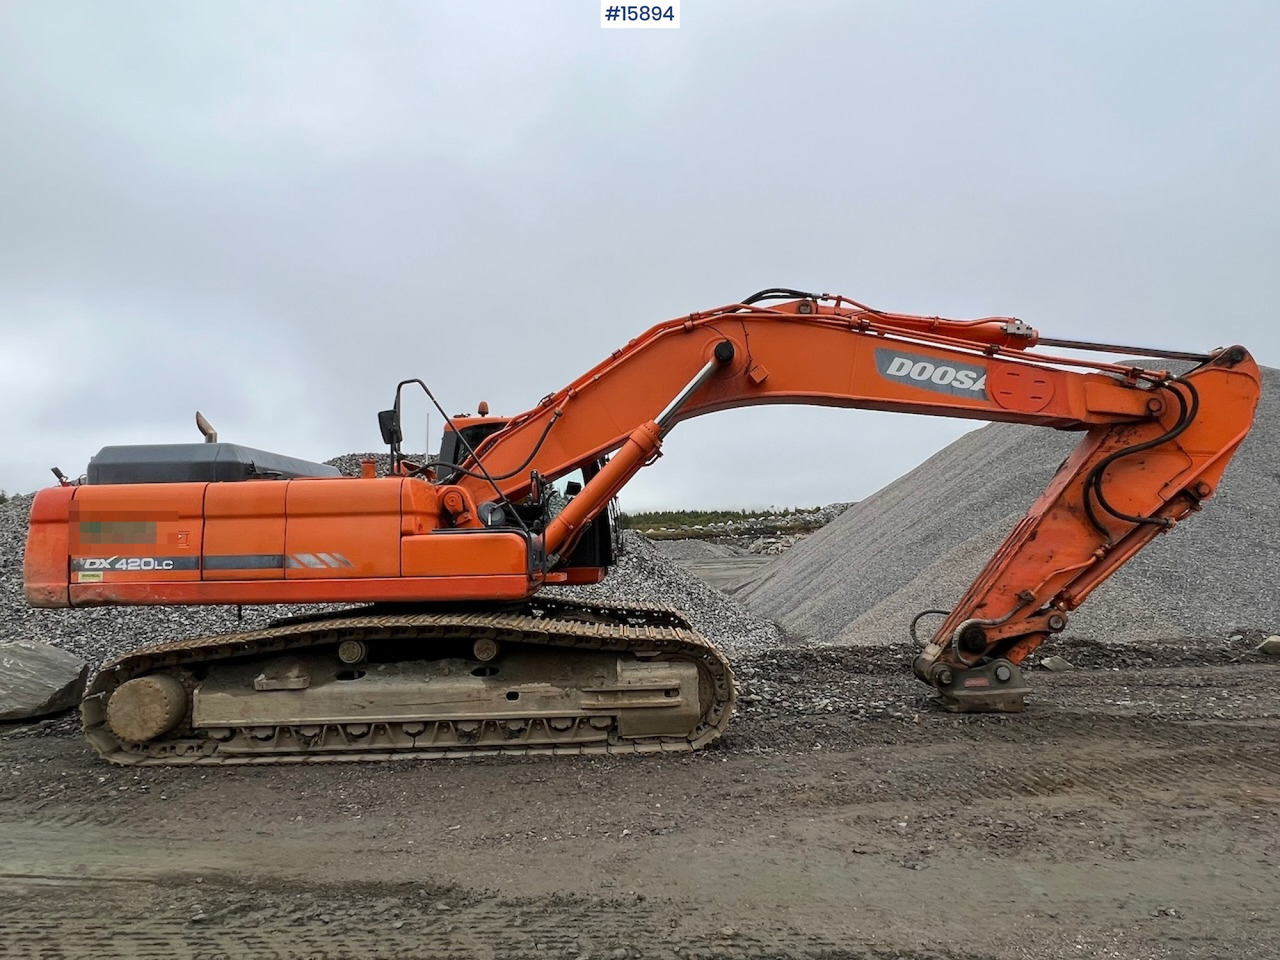 Excavator Doosan DX420 LC: picture 4